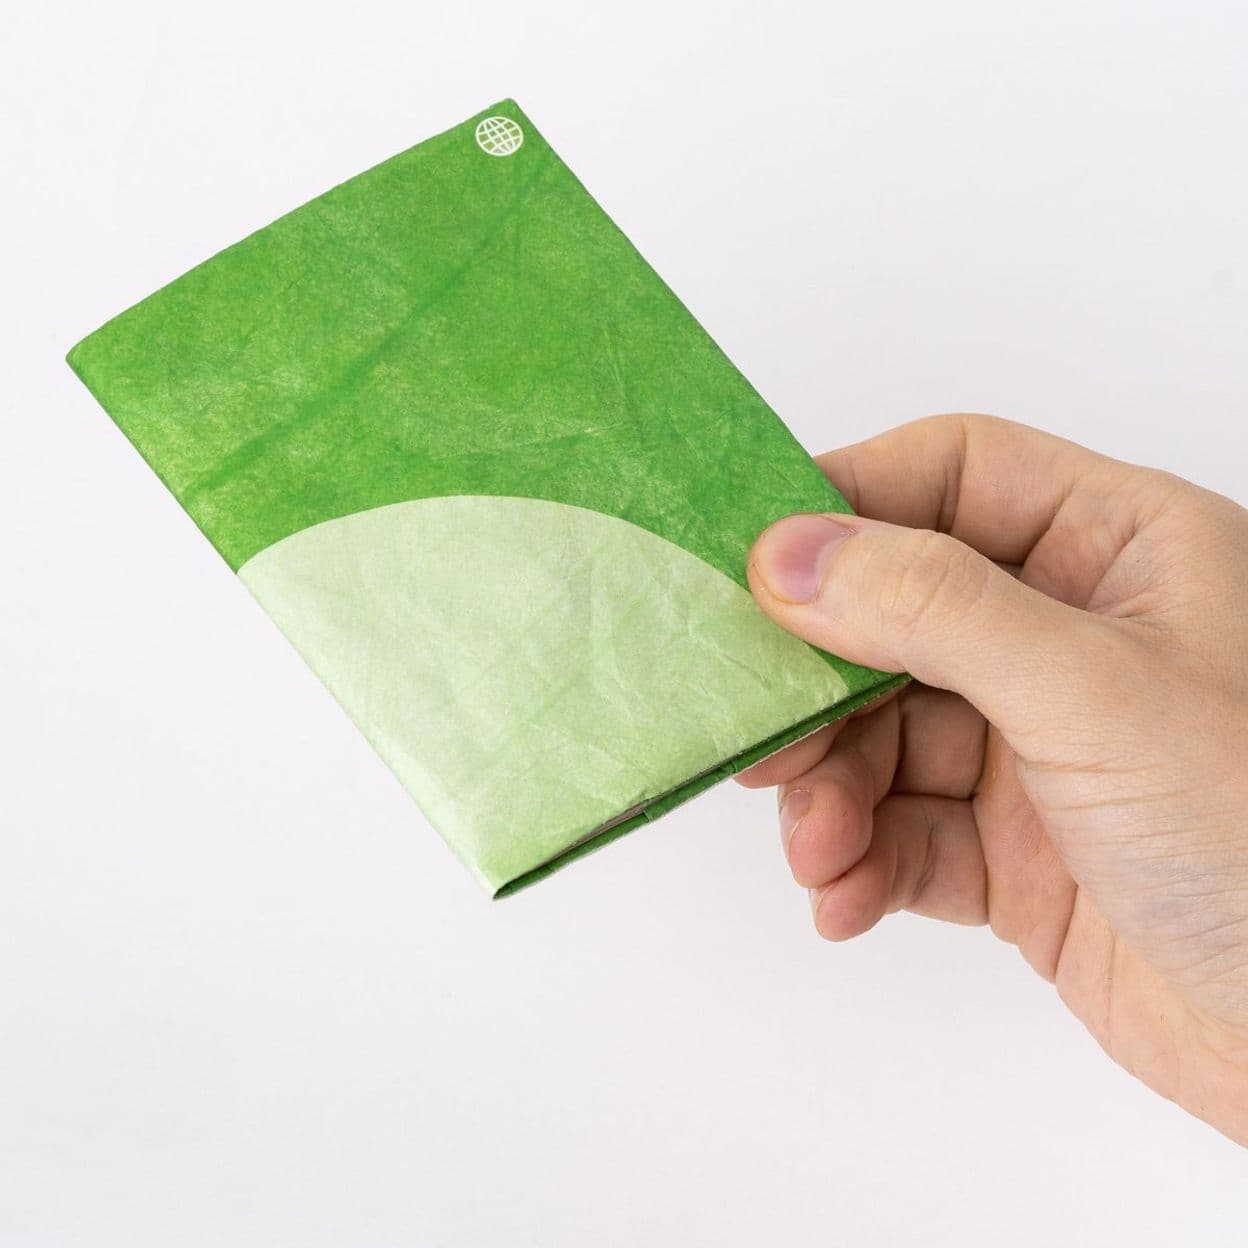 Купить Обложка для паспорта ALAP (зелёная)